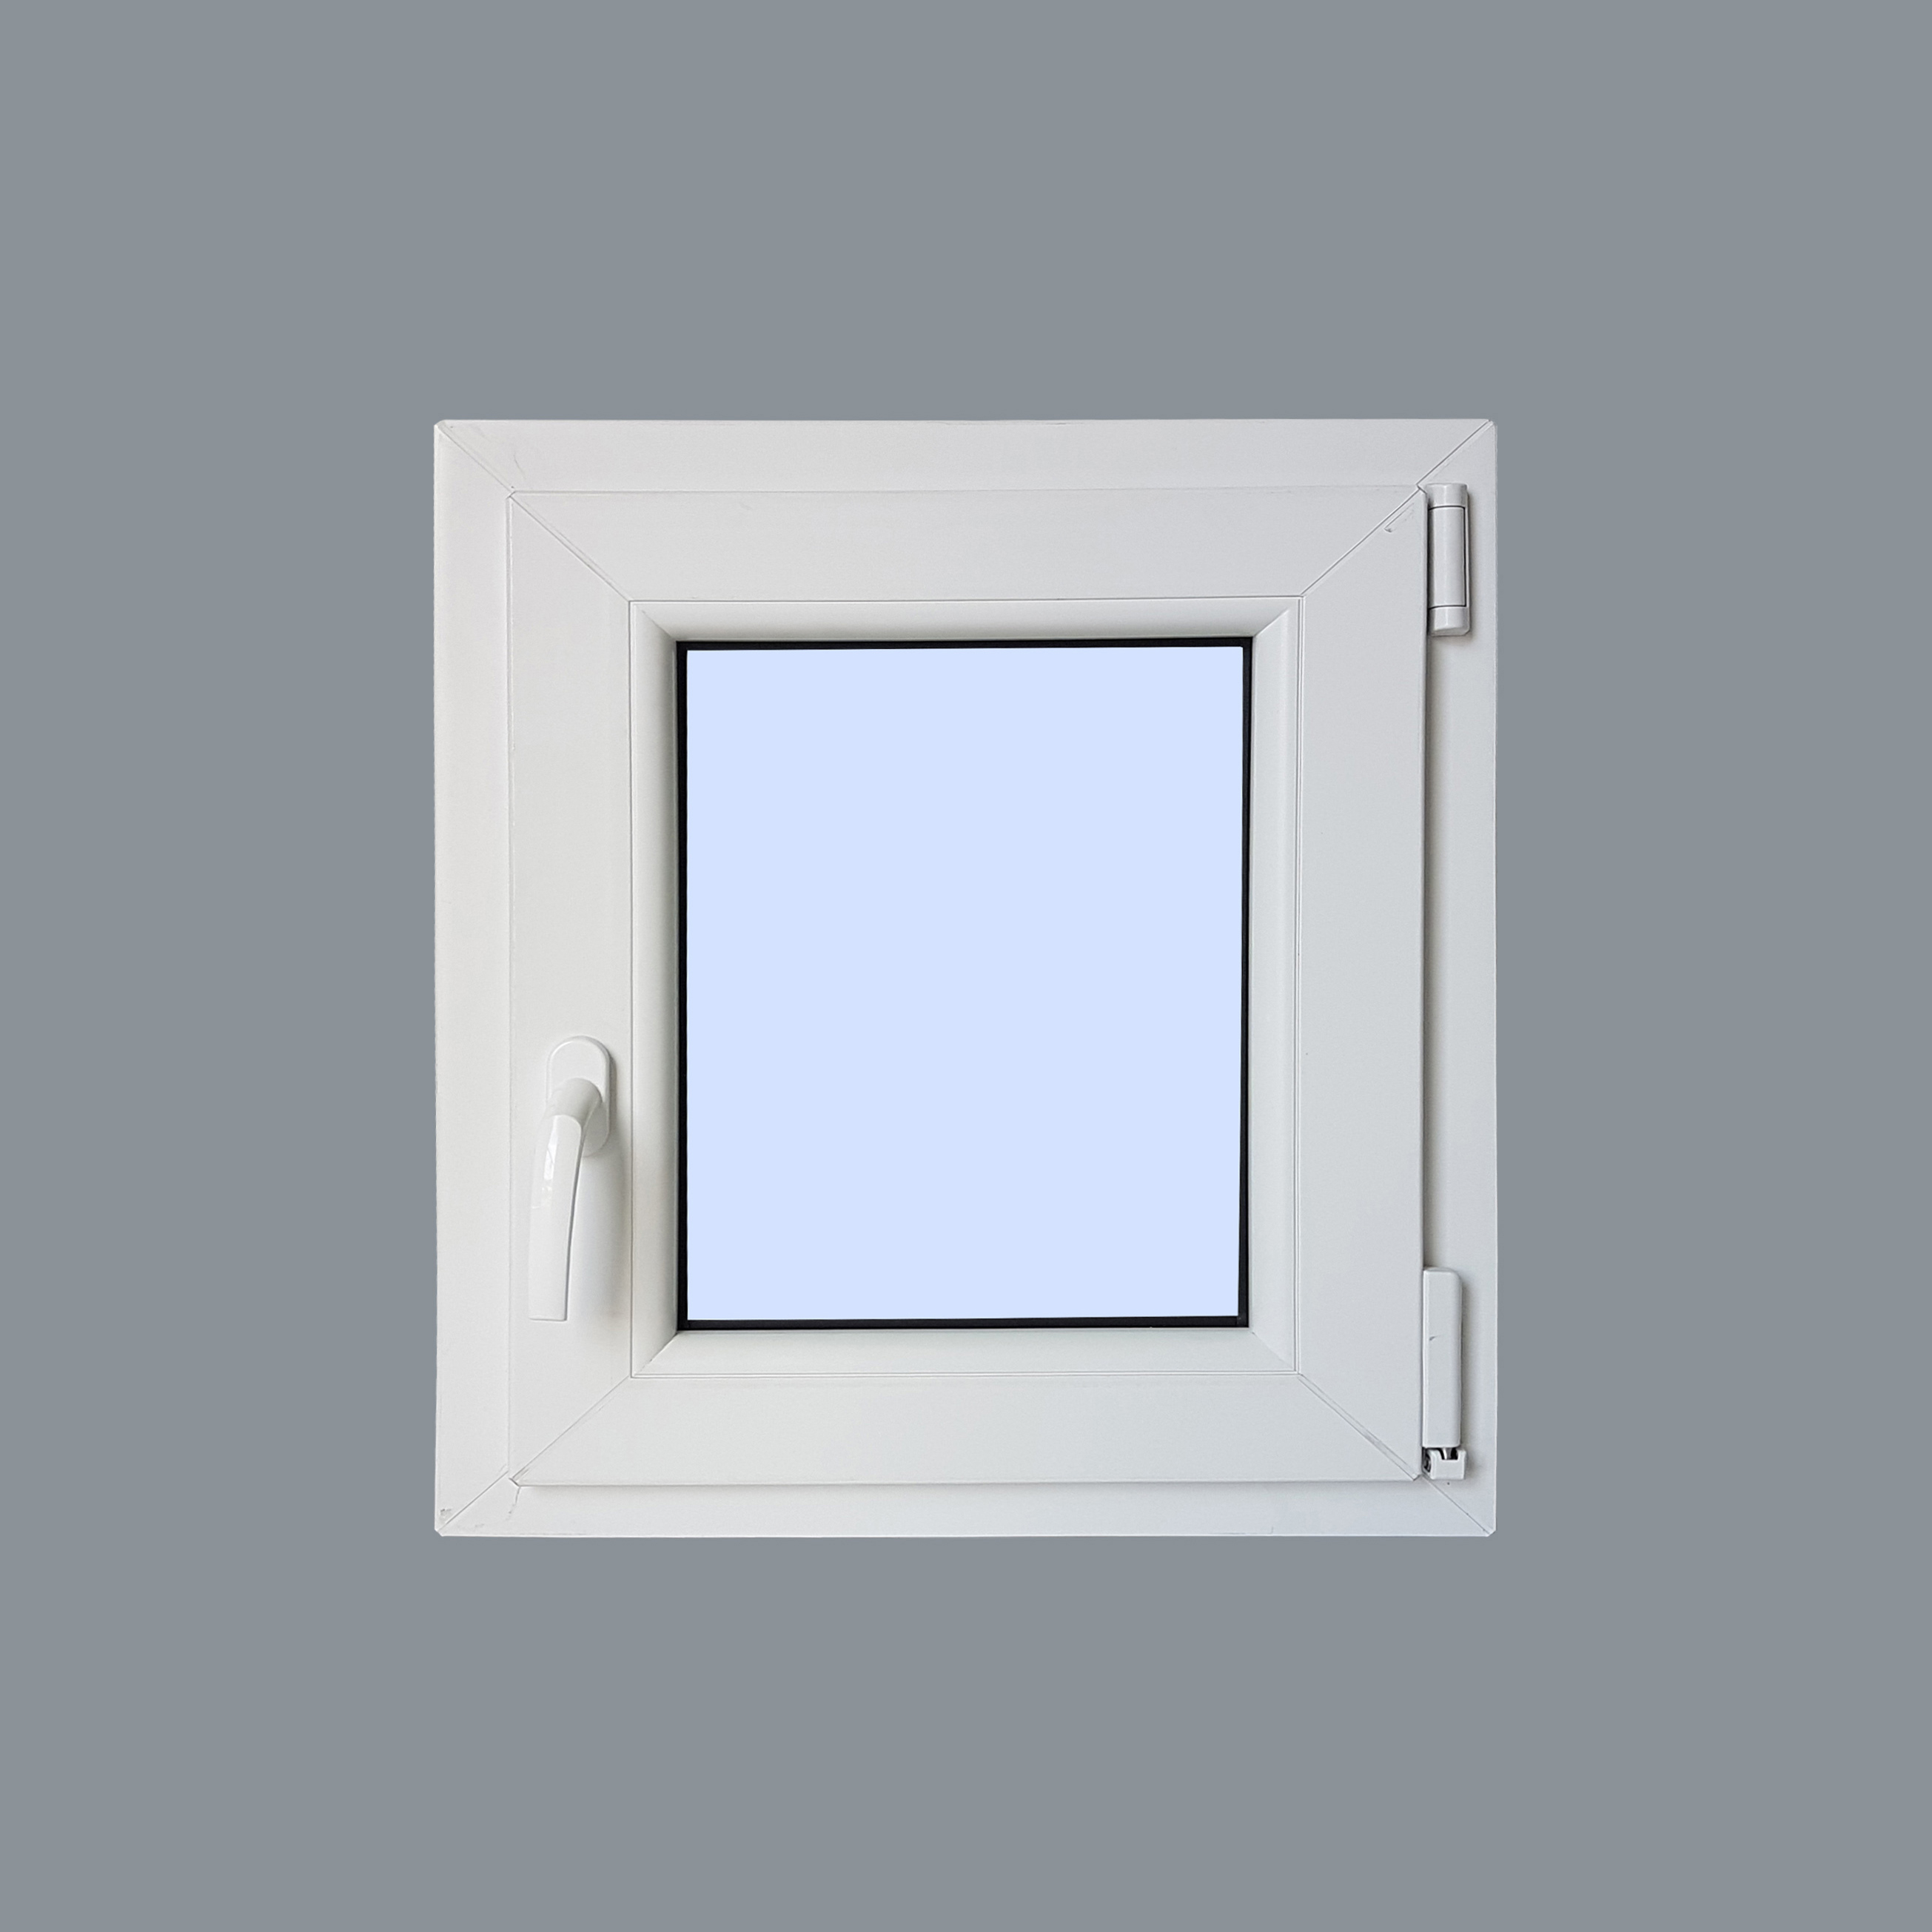 links Ventanastock Praktisches Fenster aus PVC Climalit matt Weiß oszillierend 1 Blatt mit Glas Carglass 60 cm x 50 cm